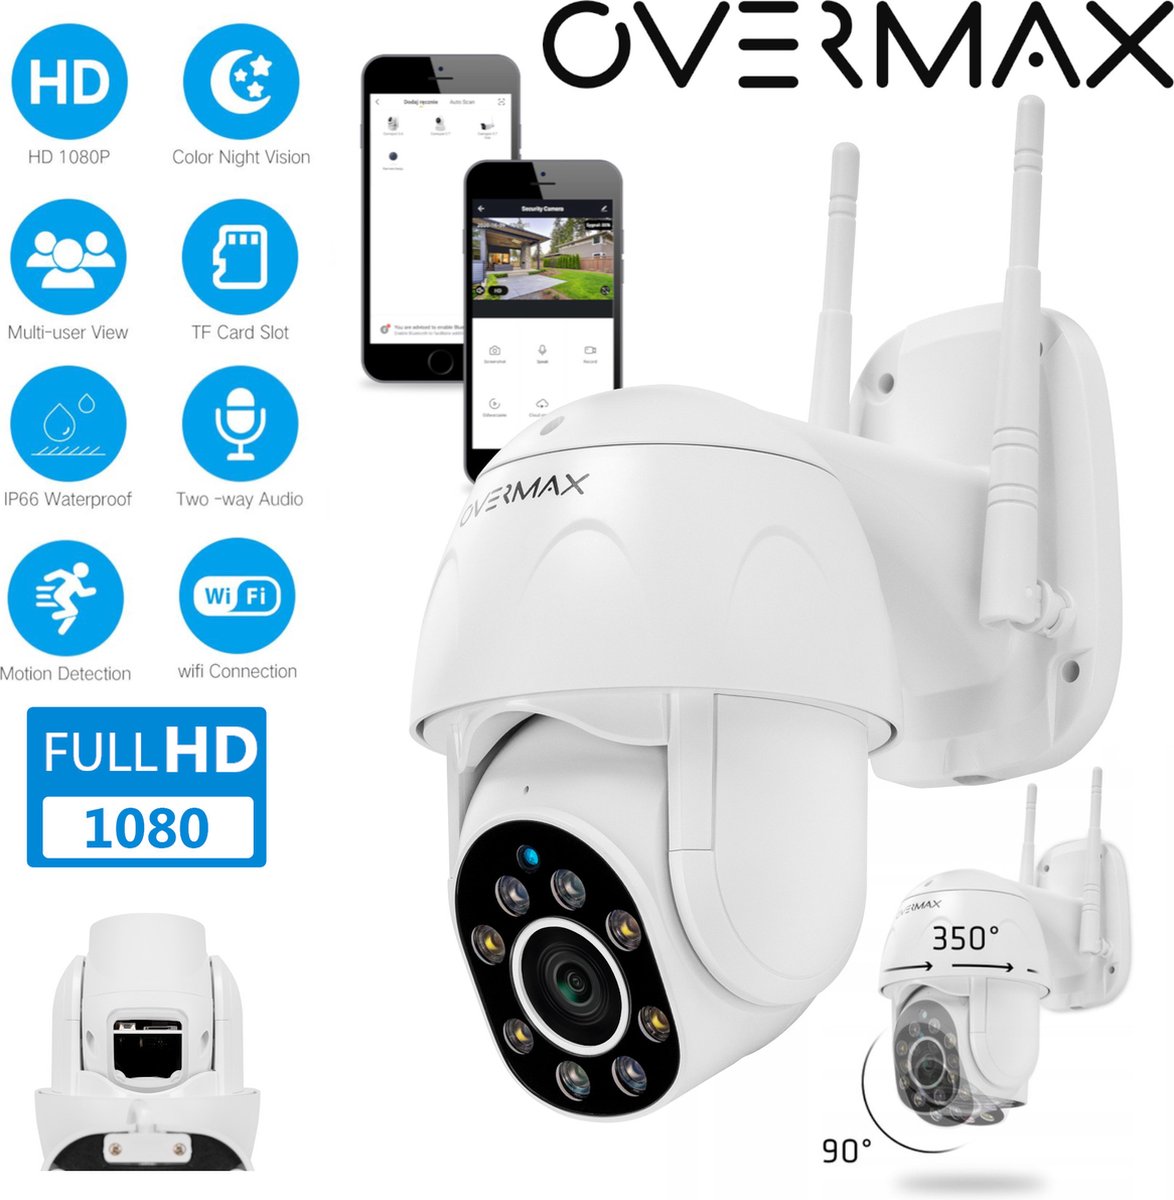 Overmax Camspot 4.9 - Beveiligingscamera voor buiten - nachtmodus tot 50m - WiFI - 350°